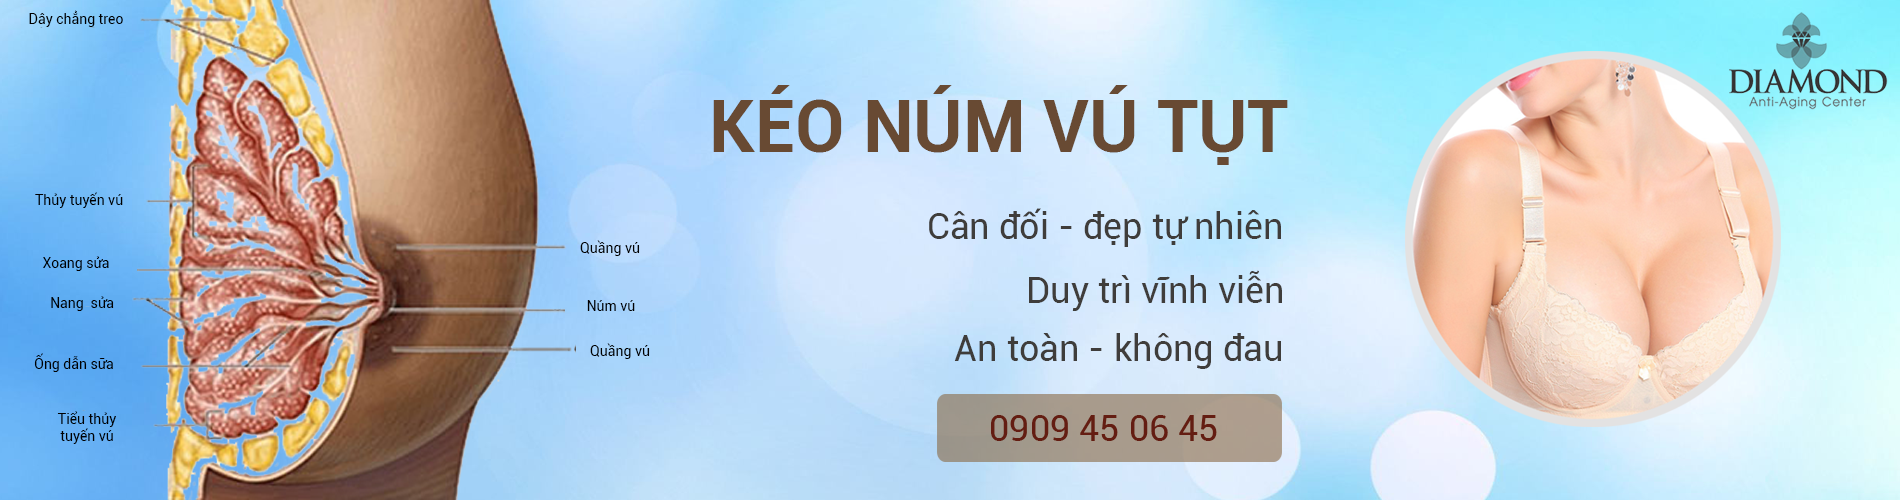 Kéo núm vú bị tụt an toàn hiệu quả nhất Việt Nam